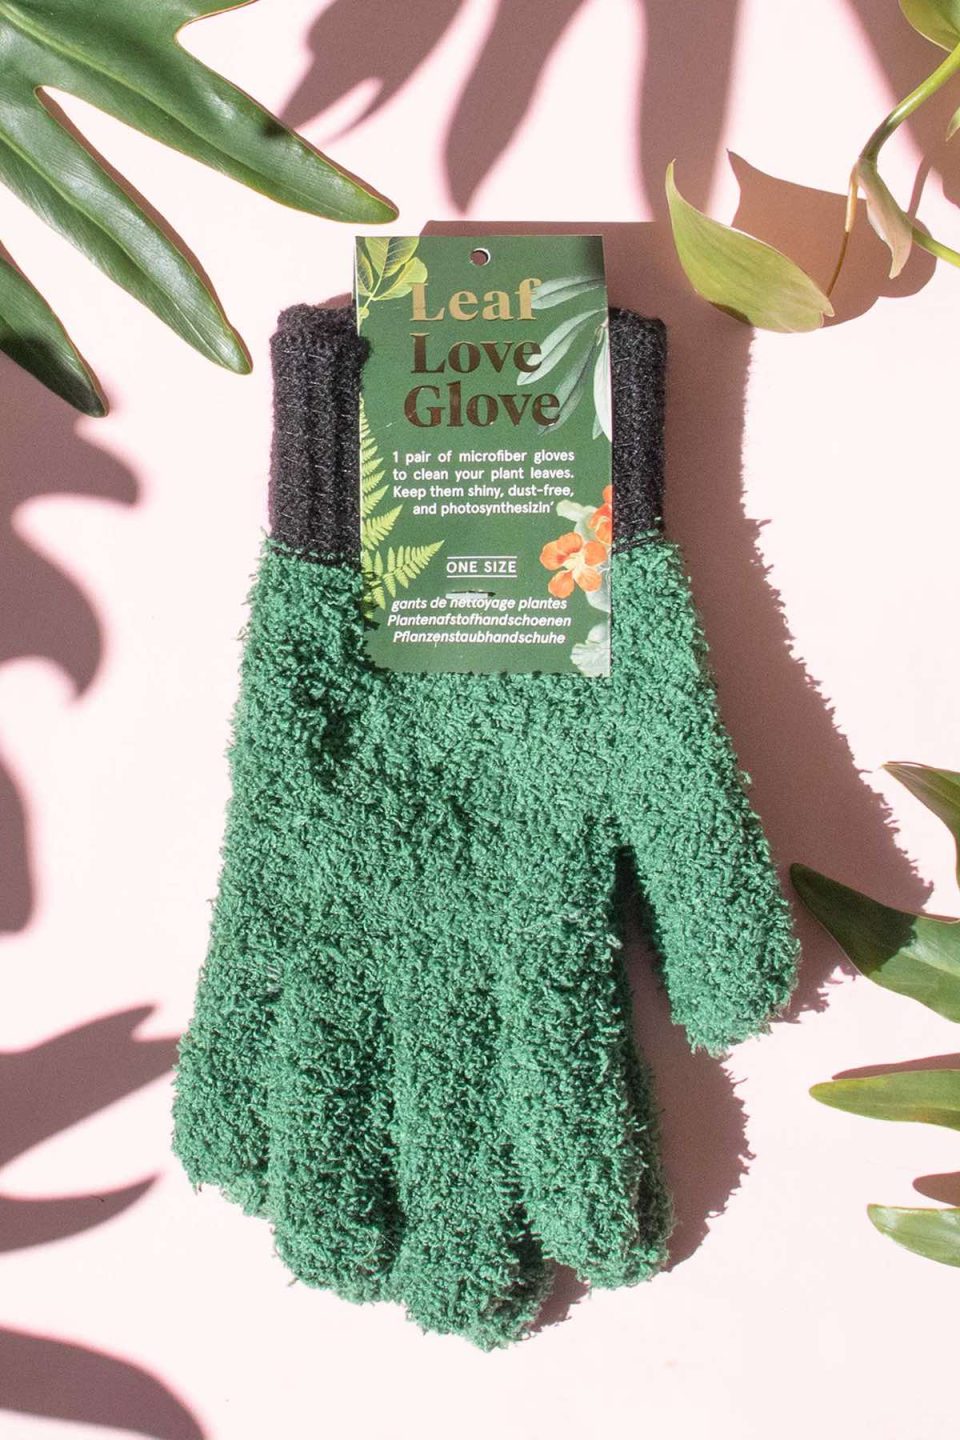 Na slici se vidi par zelenih rukavica od frote materijala na rozoj pozadini okružene listovima biljaka. Na etiketi piše "Leaf Love Glove", što upućuje na to da se radi o rukavicama za brisanje prašine s listova.